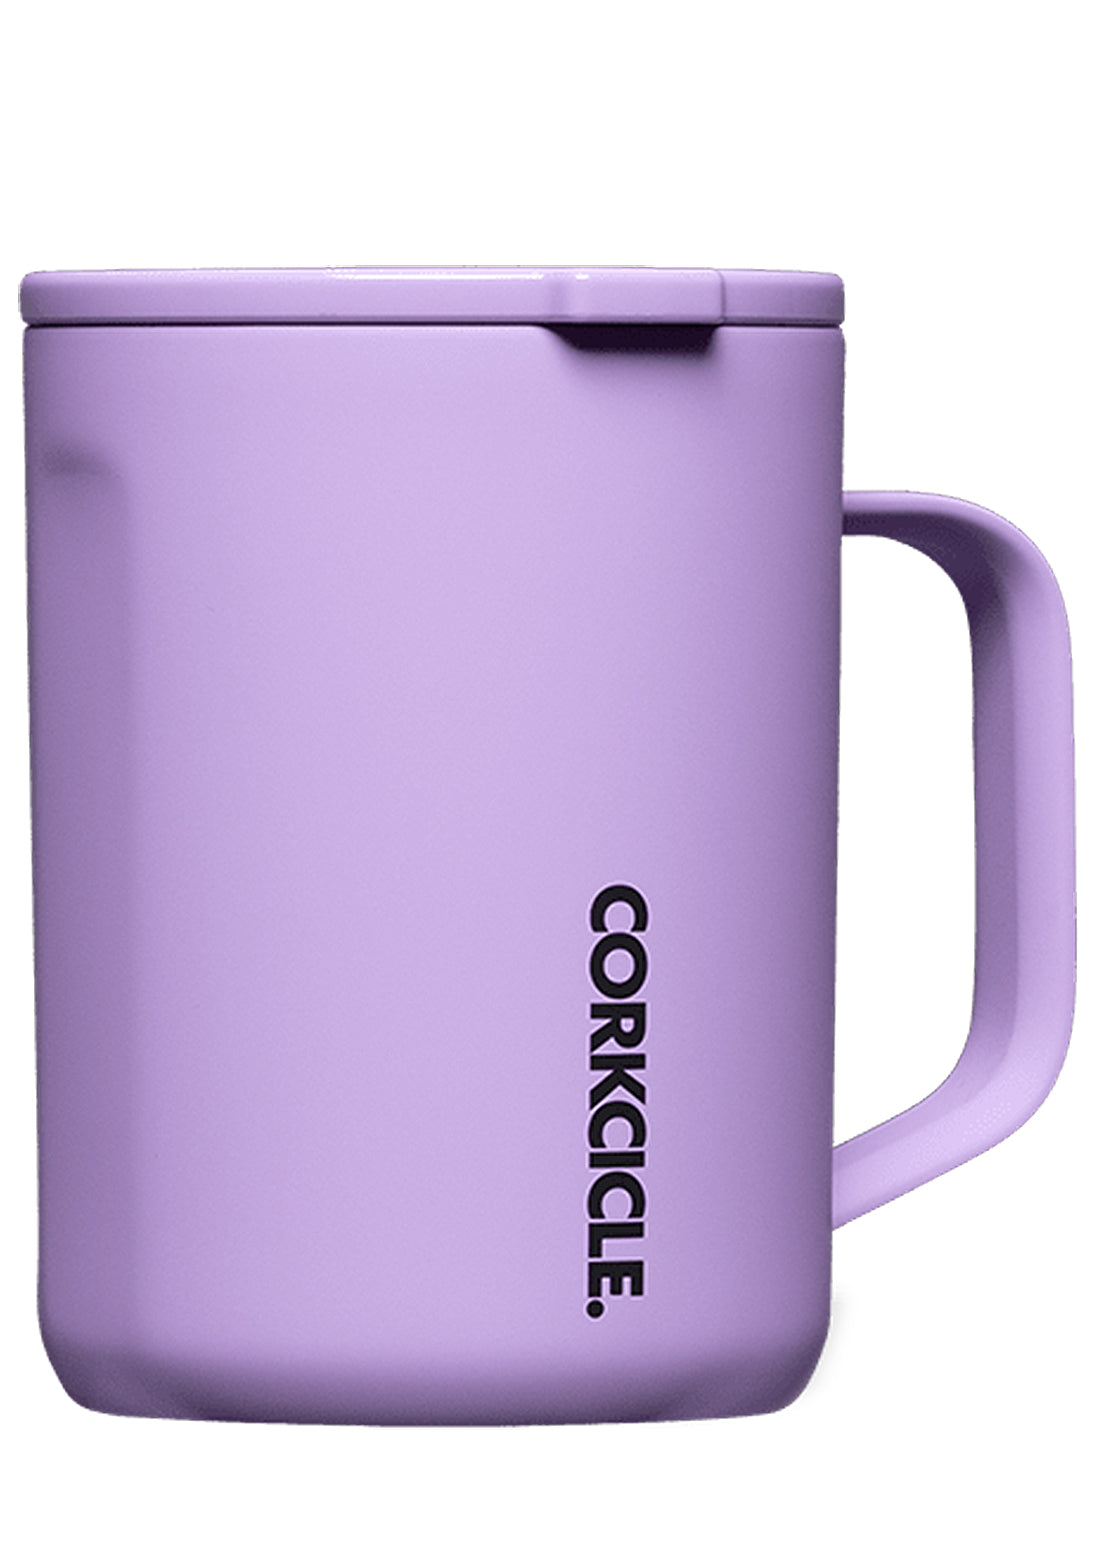 Corkcicle 16oz Coffee Mug Sun-Soaked Lilac